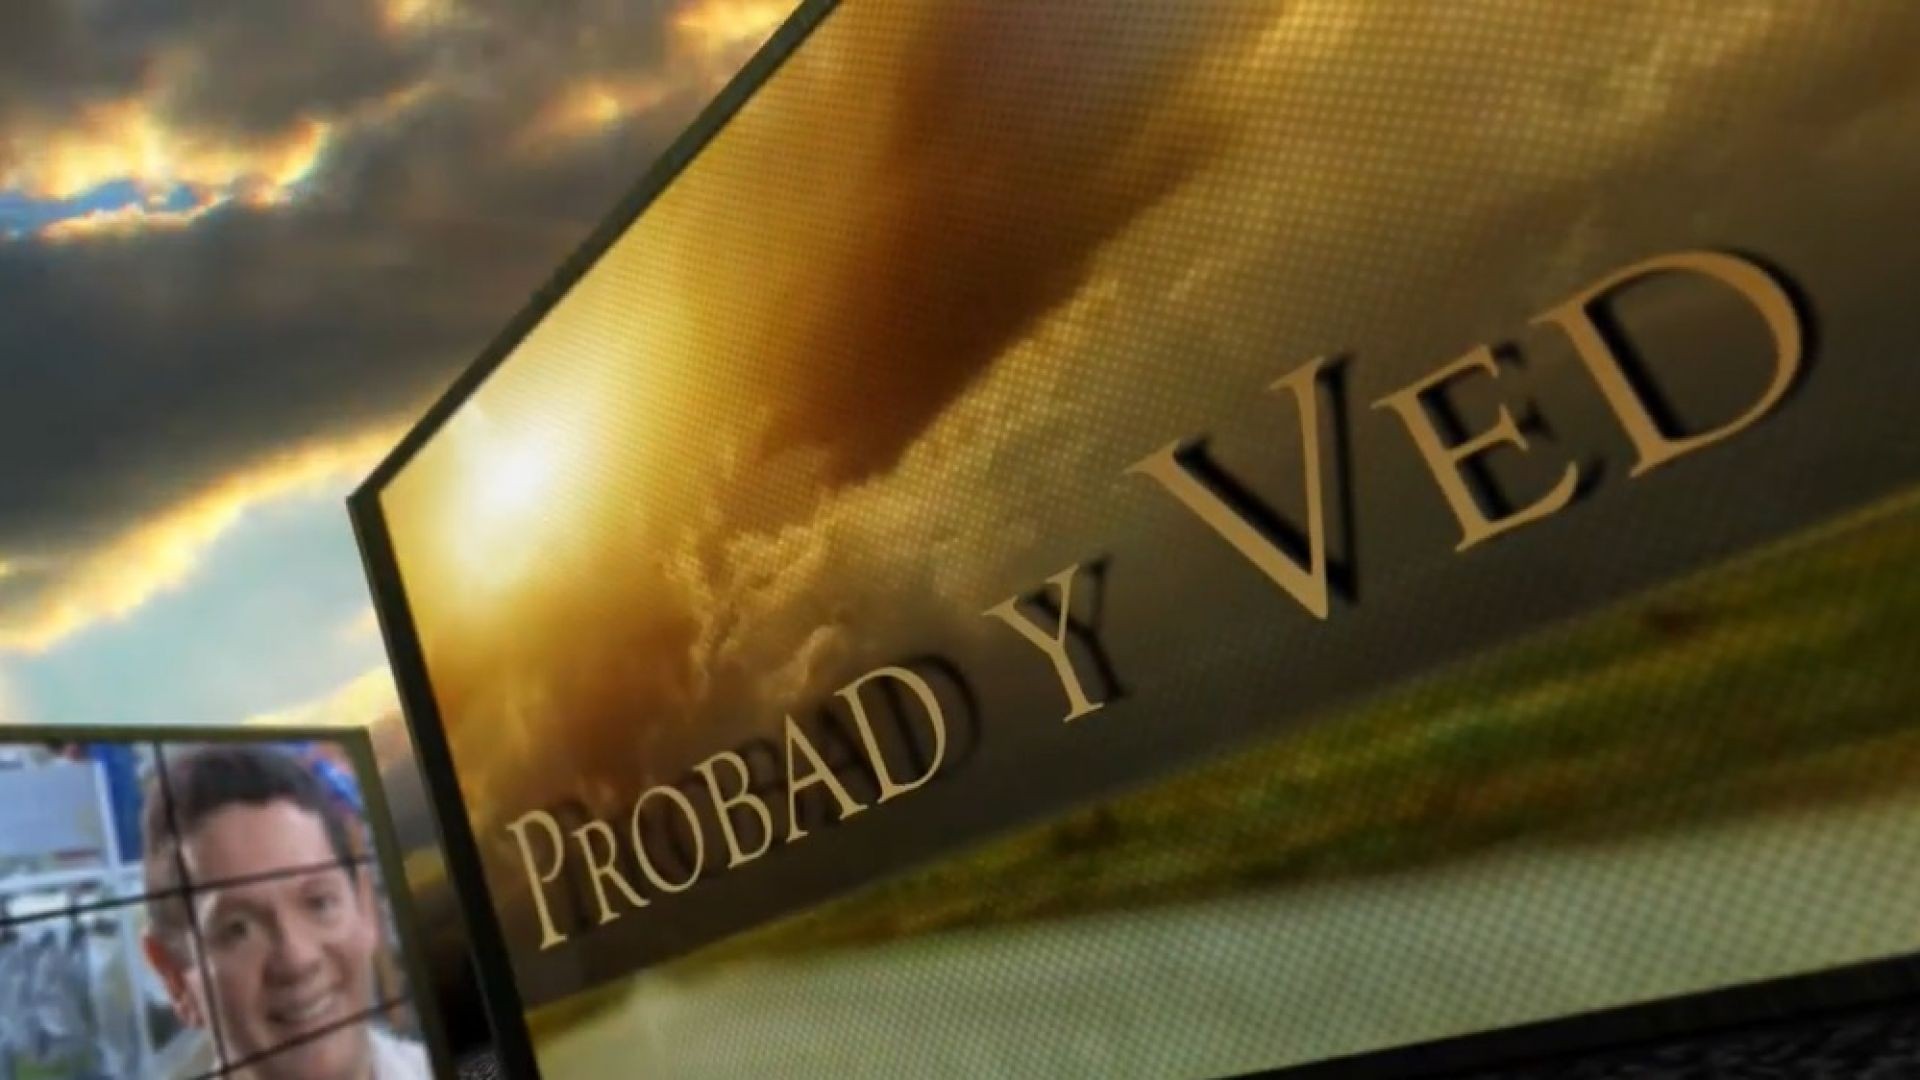 Probad y Ved 2013 - Fiel a toda prueba - 06/Jul